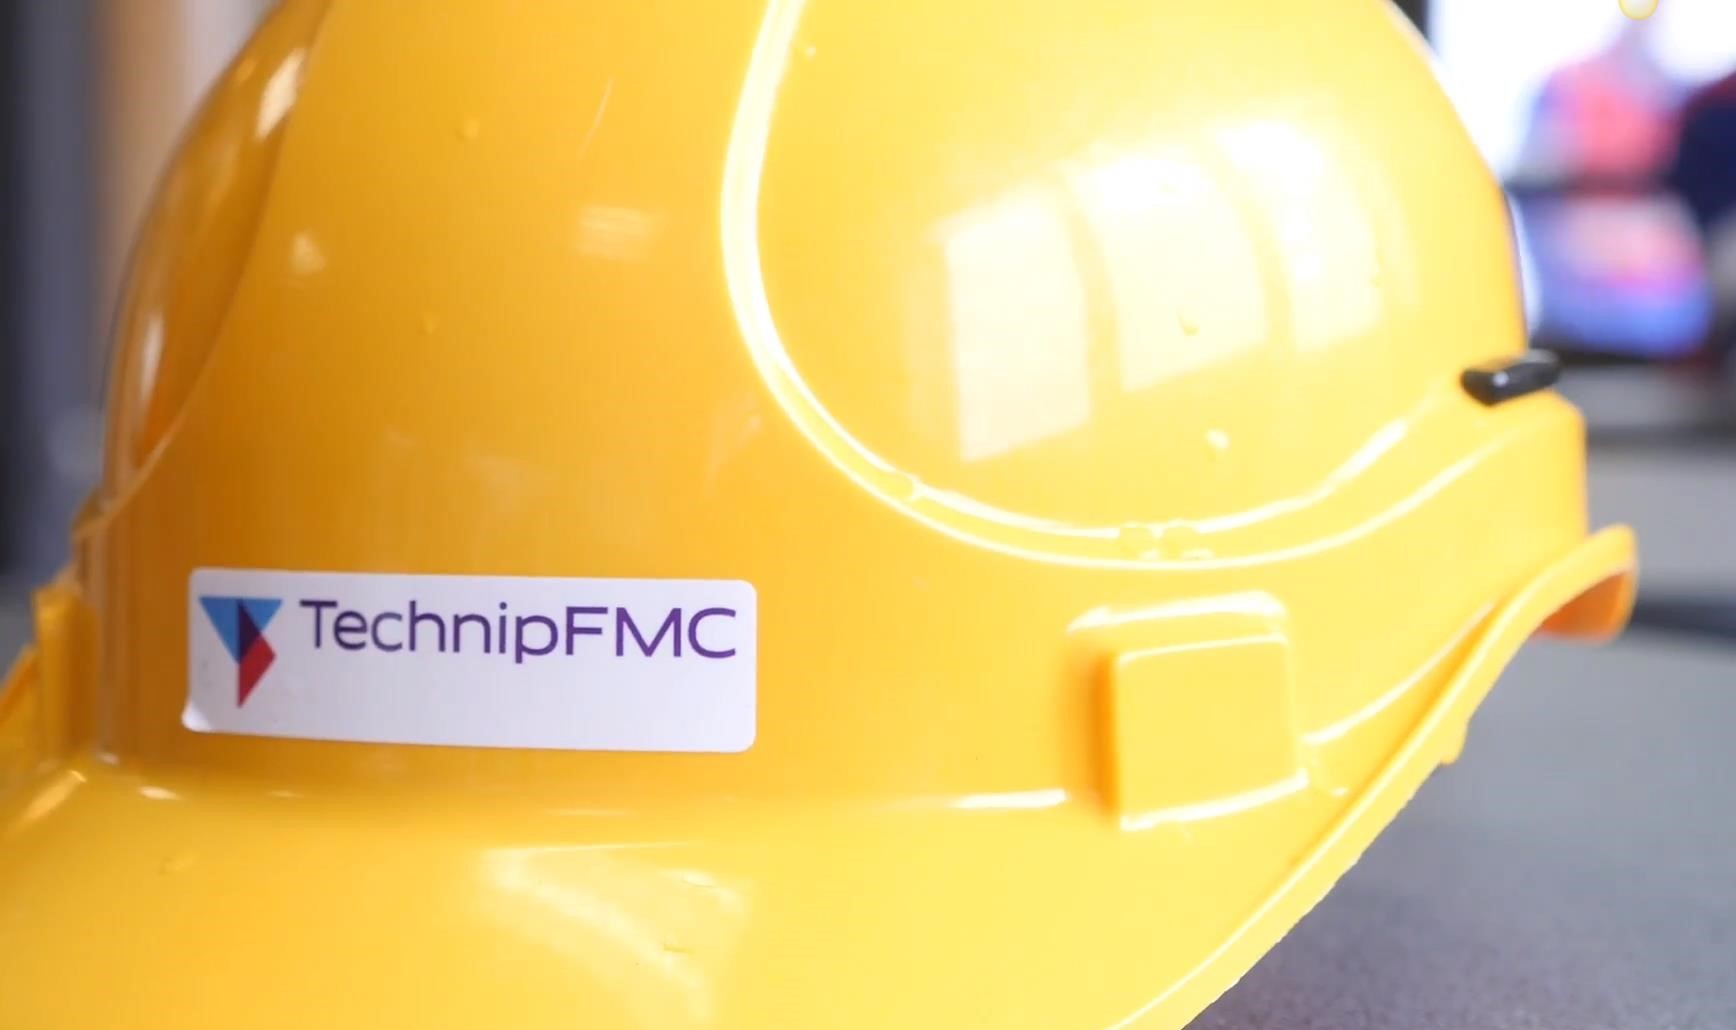 TechnipFMC helmet